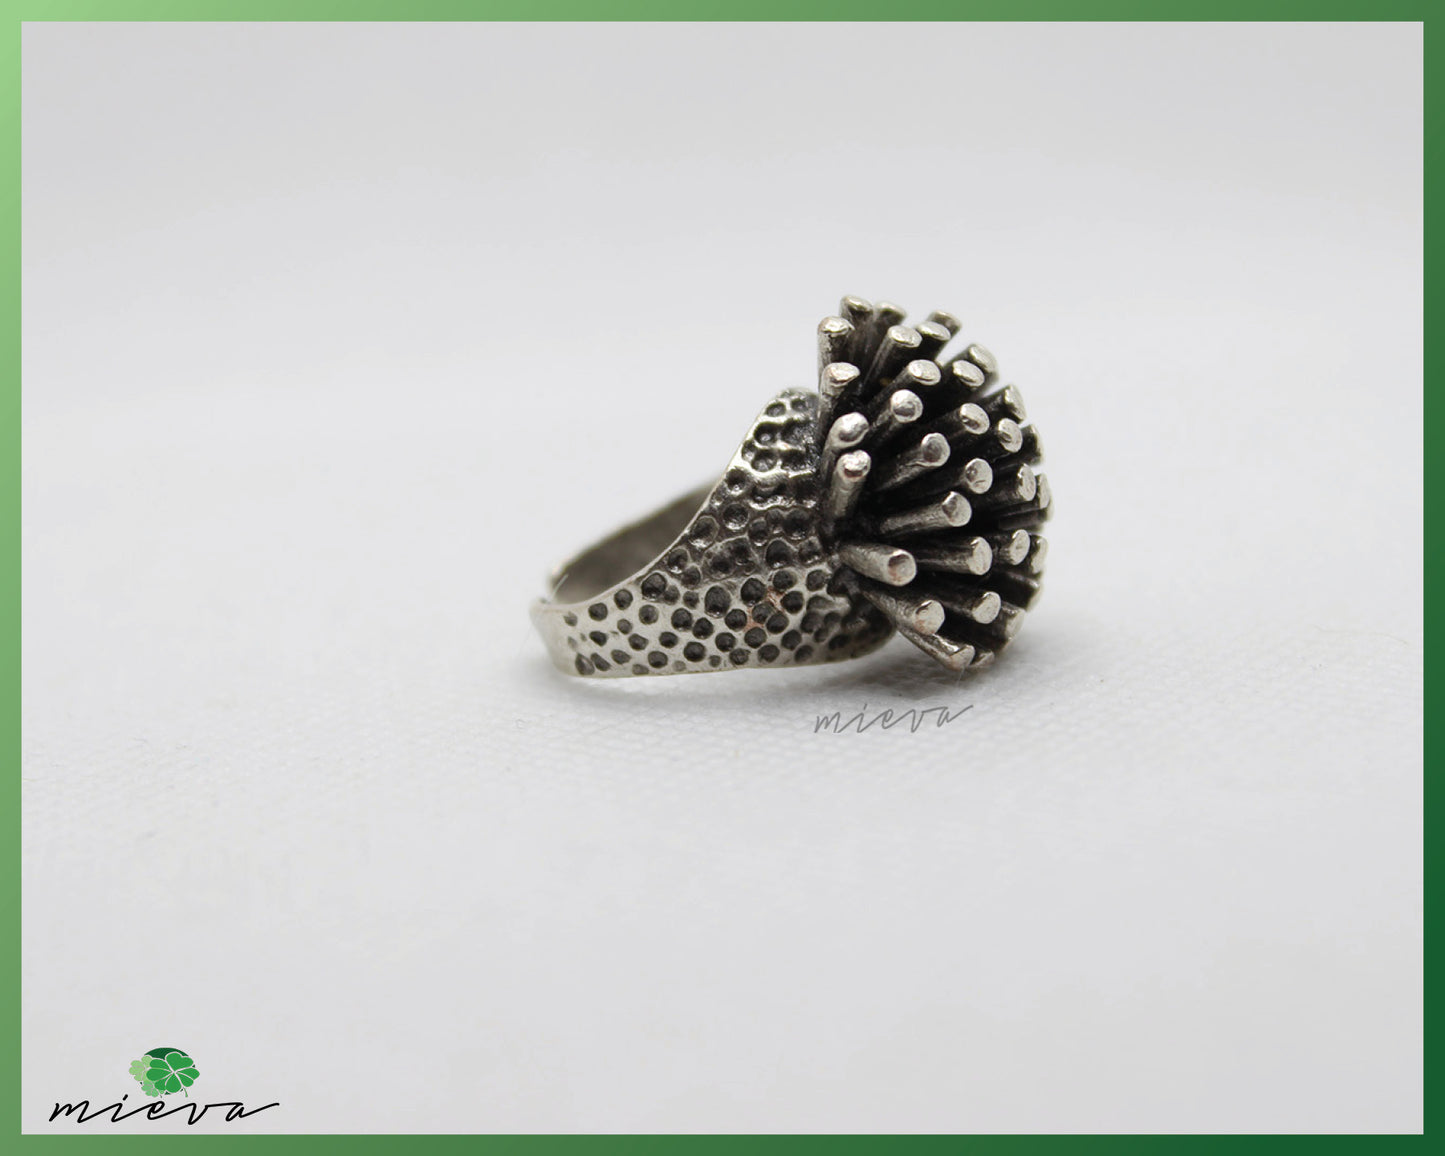 Unique Silver Sea Urchin Inspired Ring